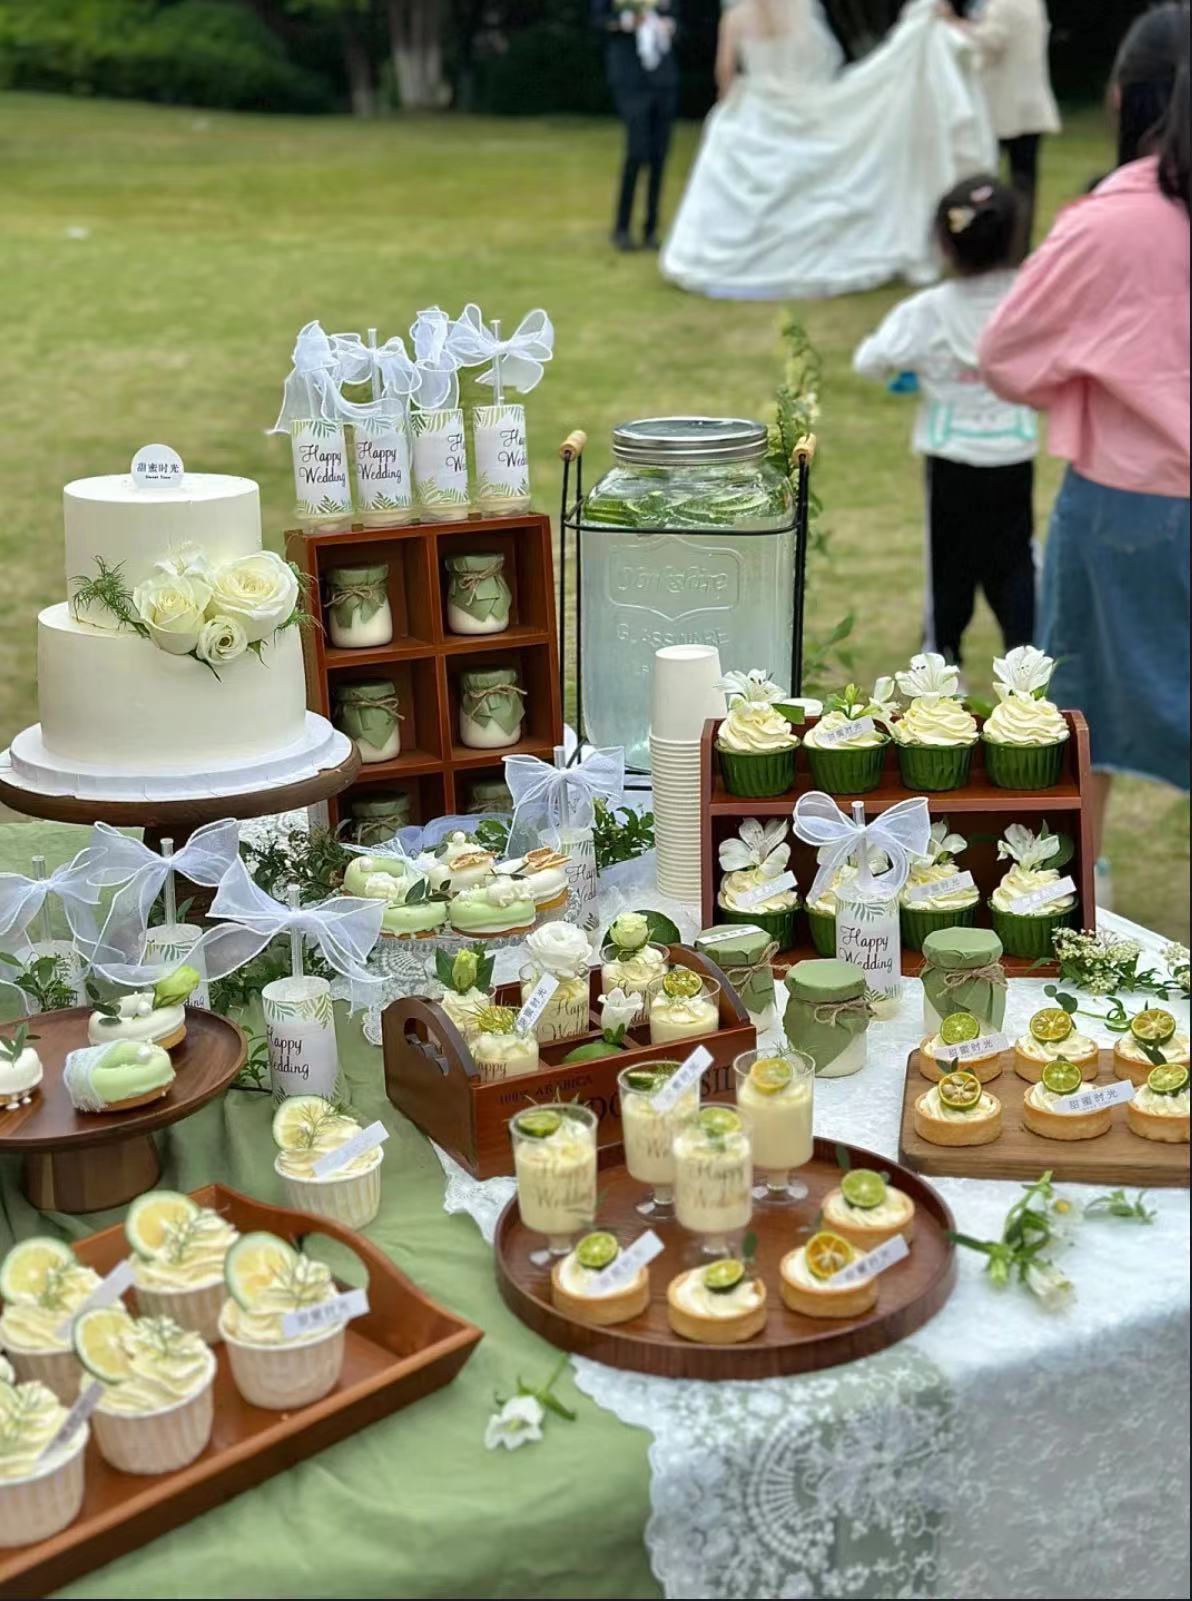 森系婚礼甜品台 小清新绿白色系户外结婚订婚宴会甜品台蛋糕装饰